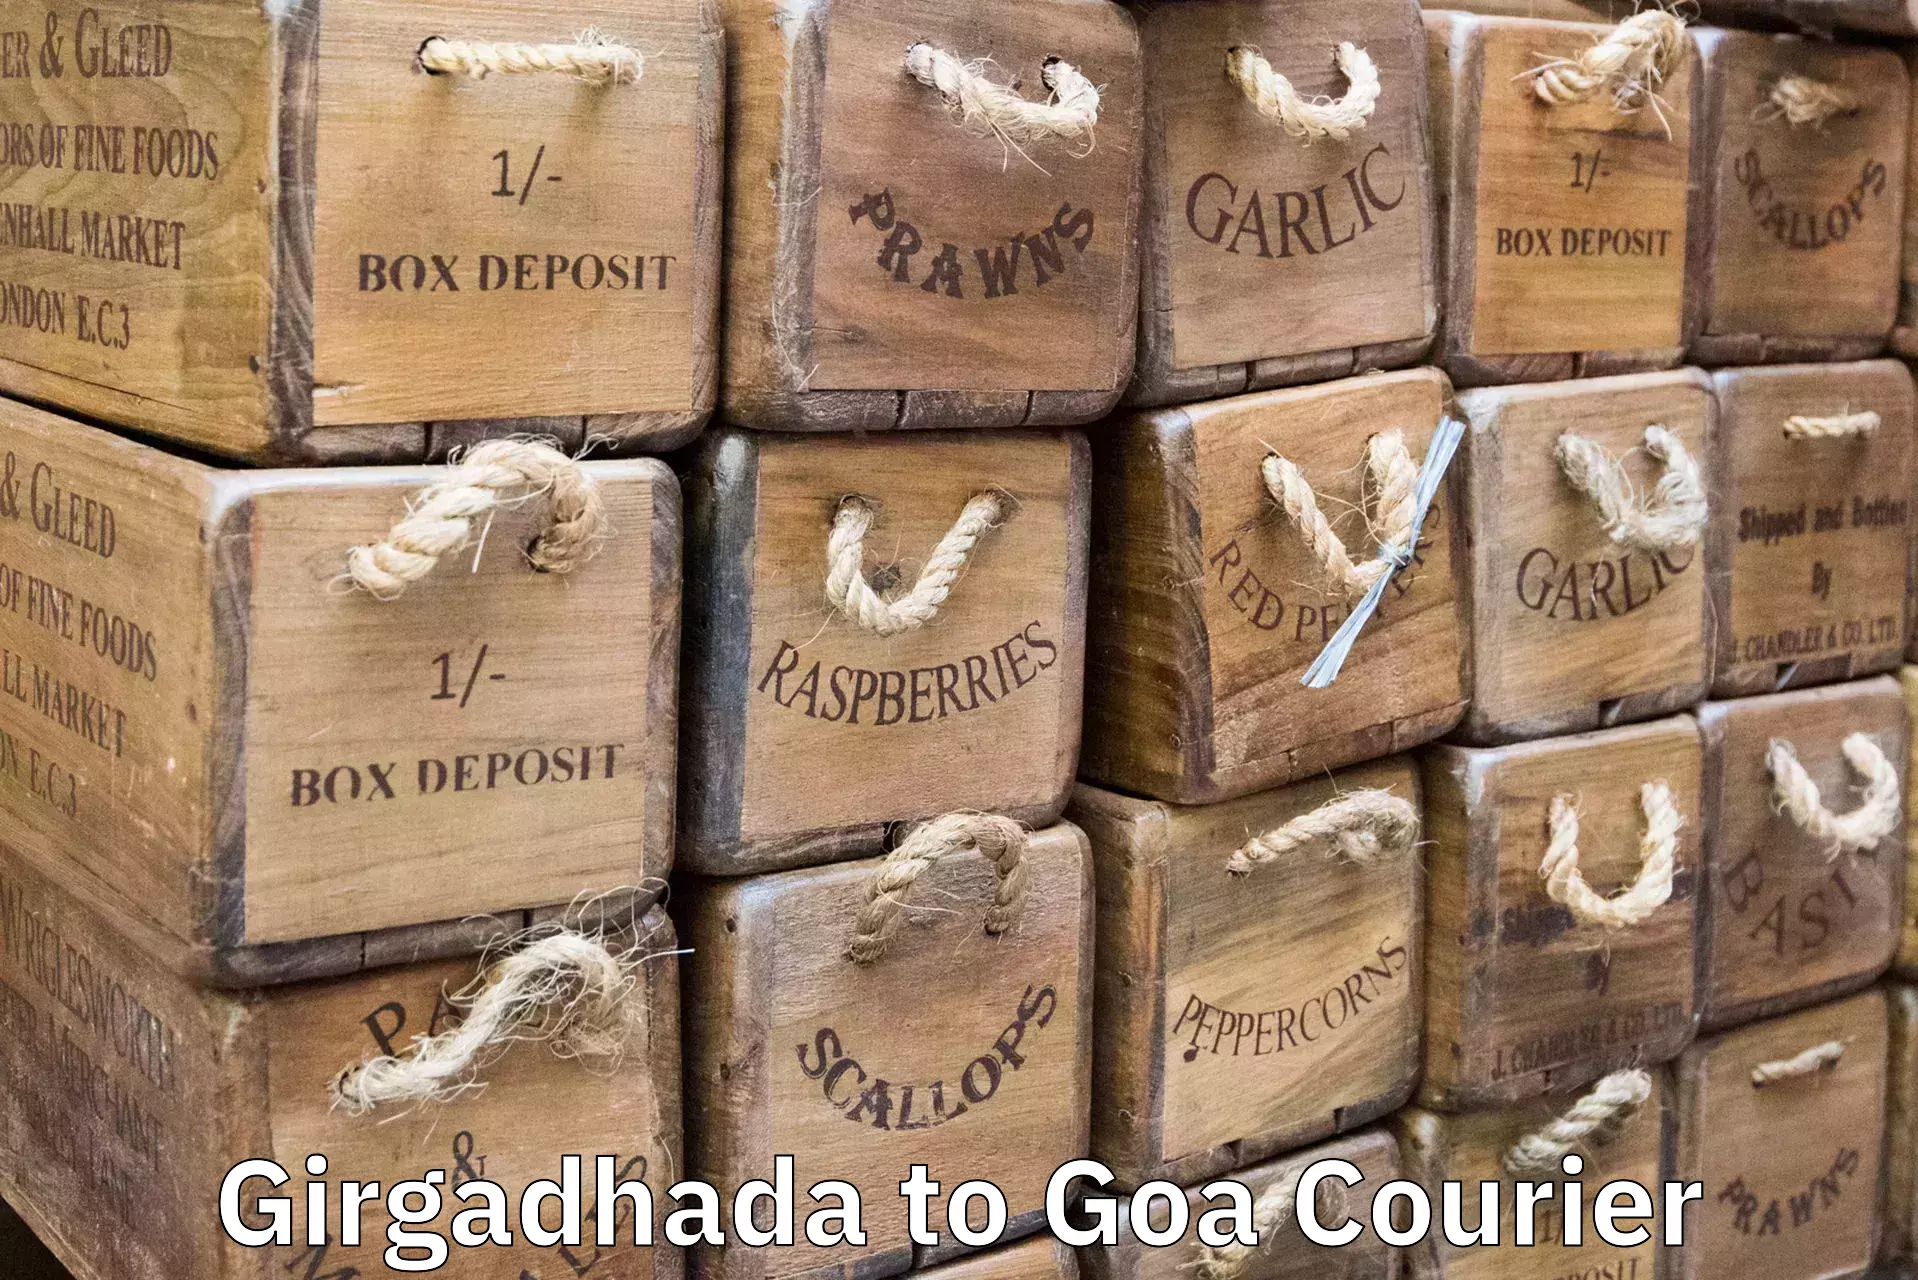 Baggage delivery estimate Girgadhada to Canacona